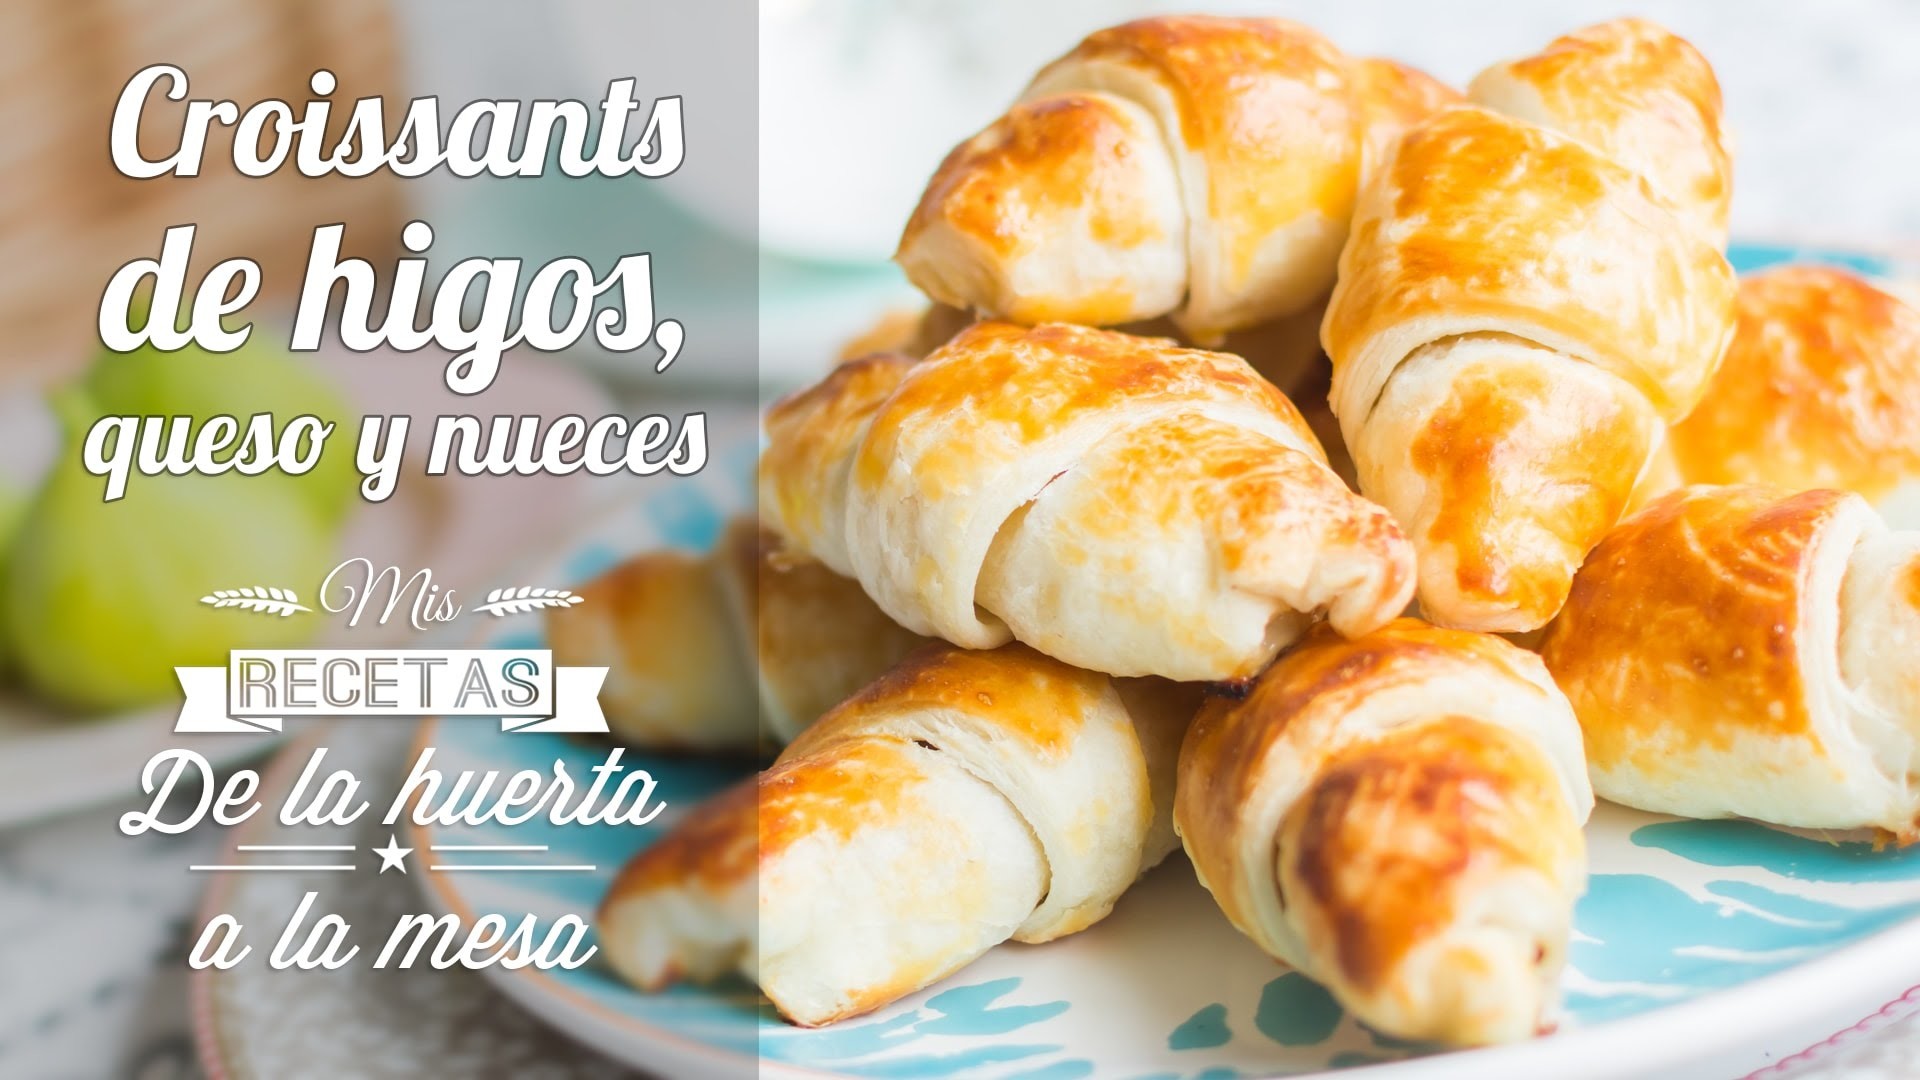 Croissants de higos, queso y nueces | De la huerta a la mesa | Quiero Cupcakes!